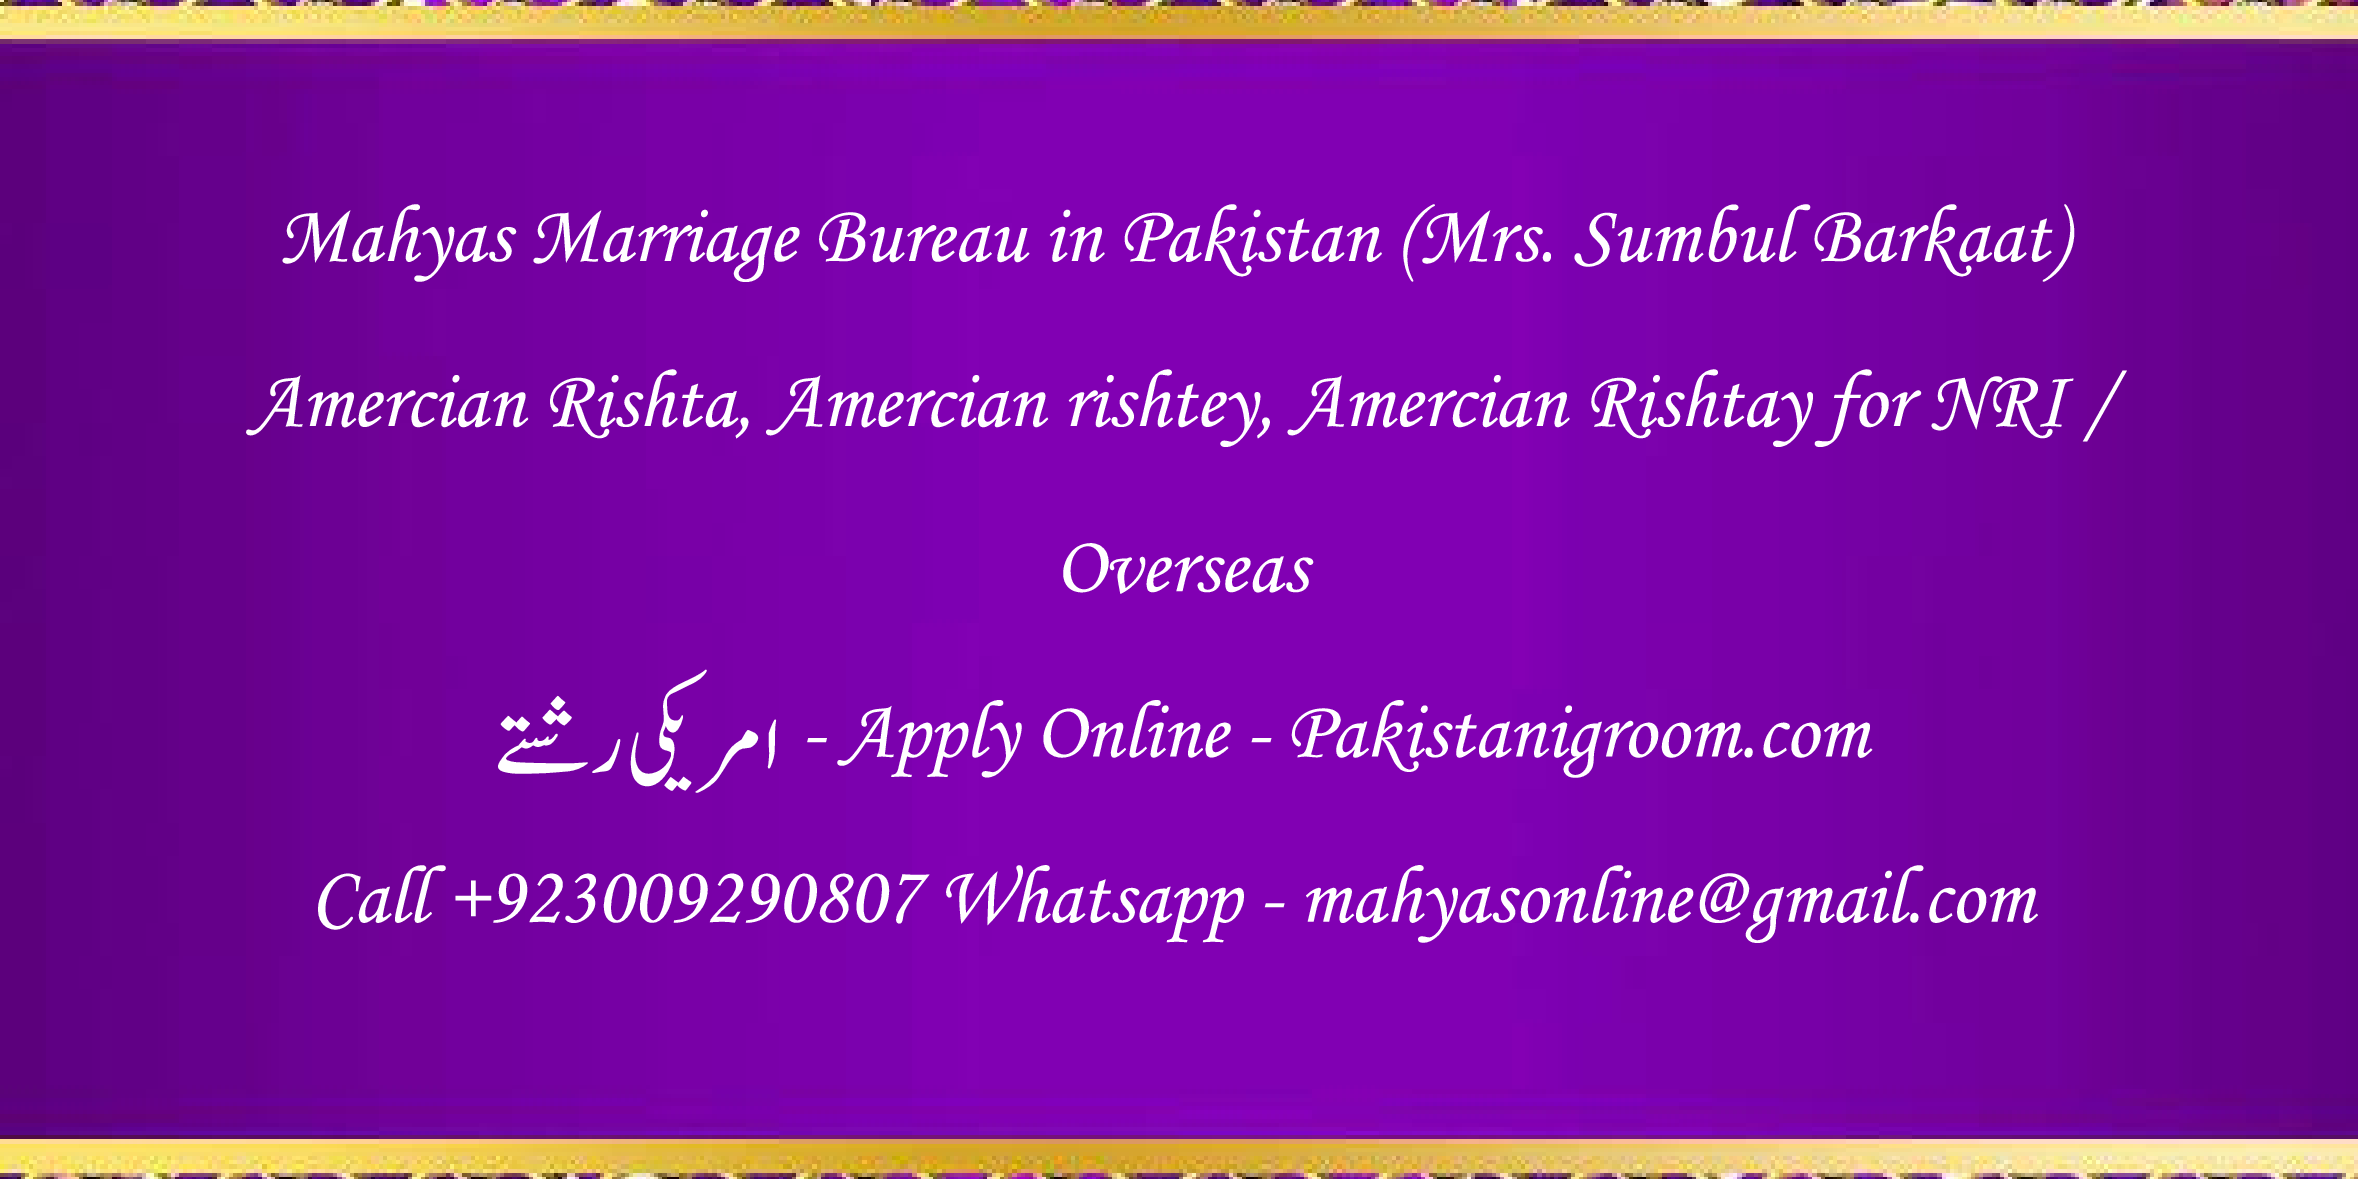 Mahyas-marriage-bureau-Karachi-Pakistan-for-Shia-Sunni-Remarriage-Divorce-Widow-Second-marriage-Punjabi-Pashto-Urdu-2.png